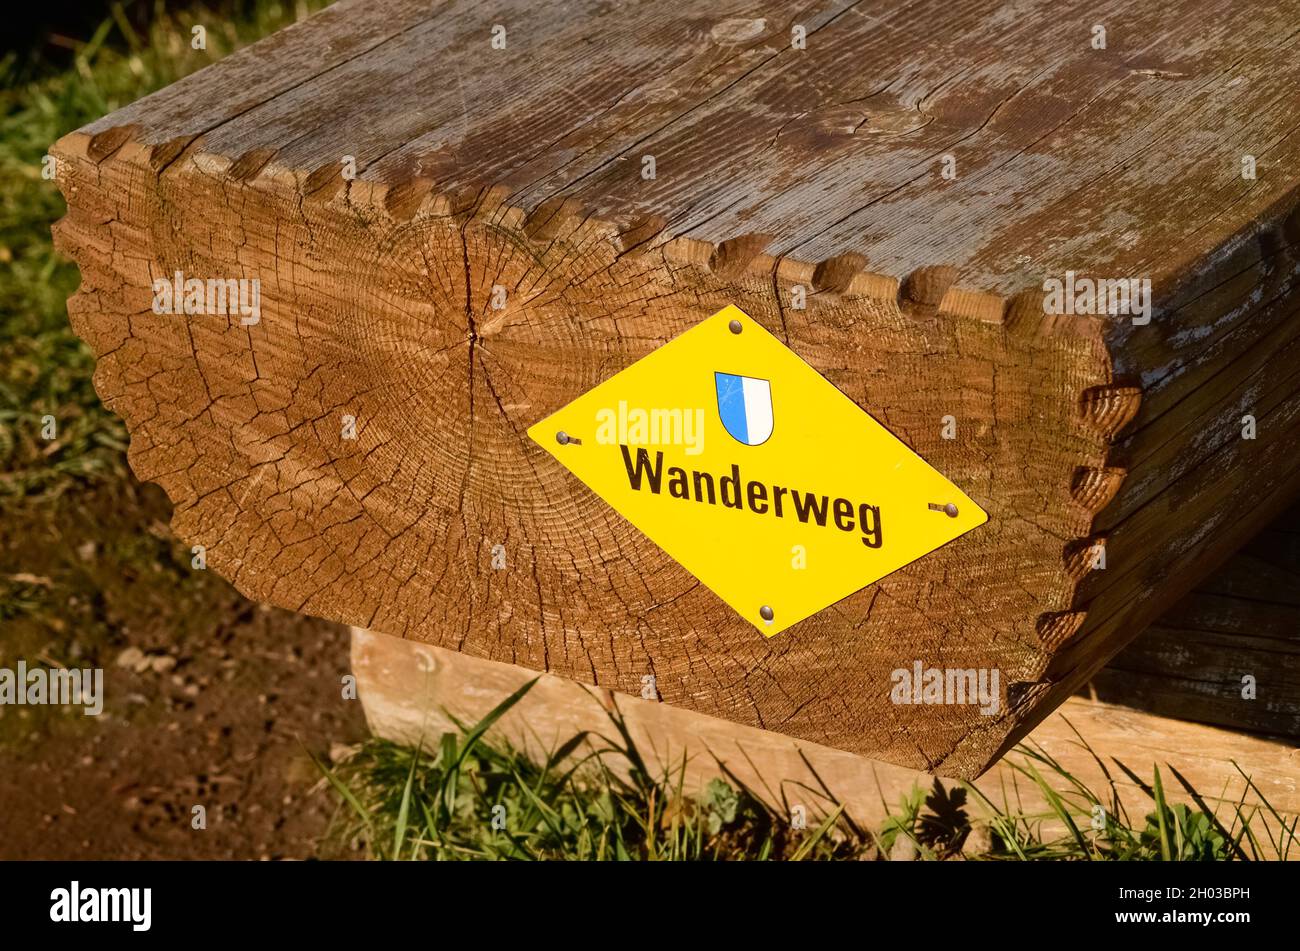 Wooden bench and yellow sign Wanderweg (Hiking path) in the swiss alps, Switzerland, Europe Stock Photo